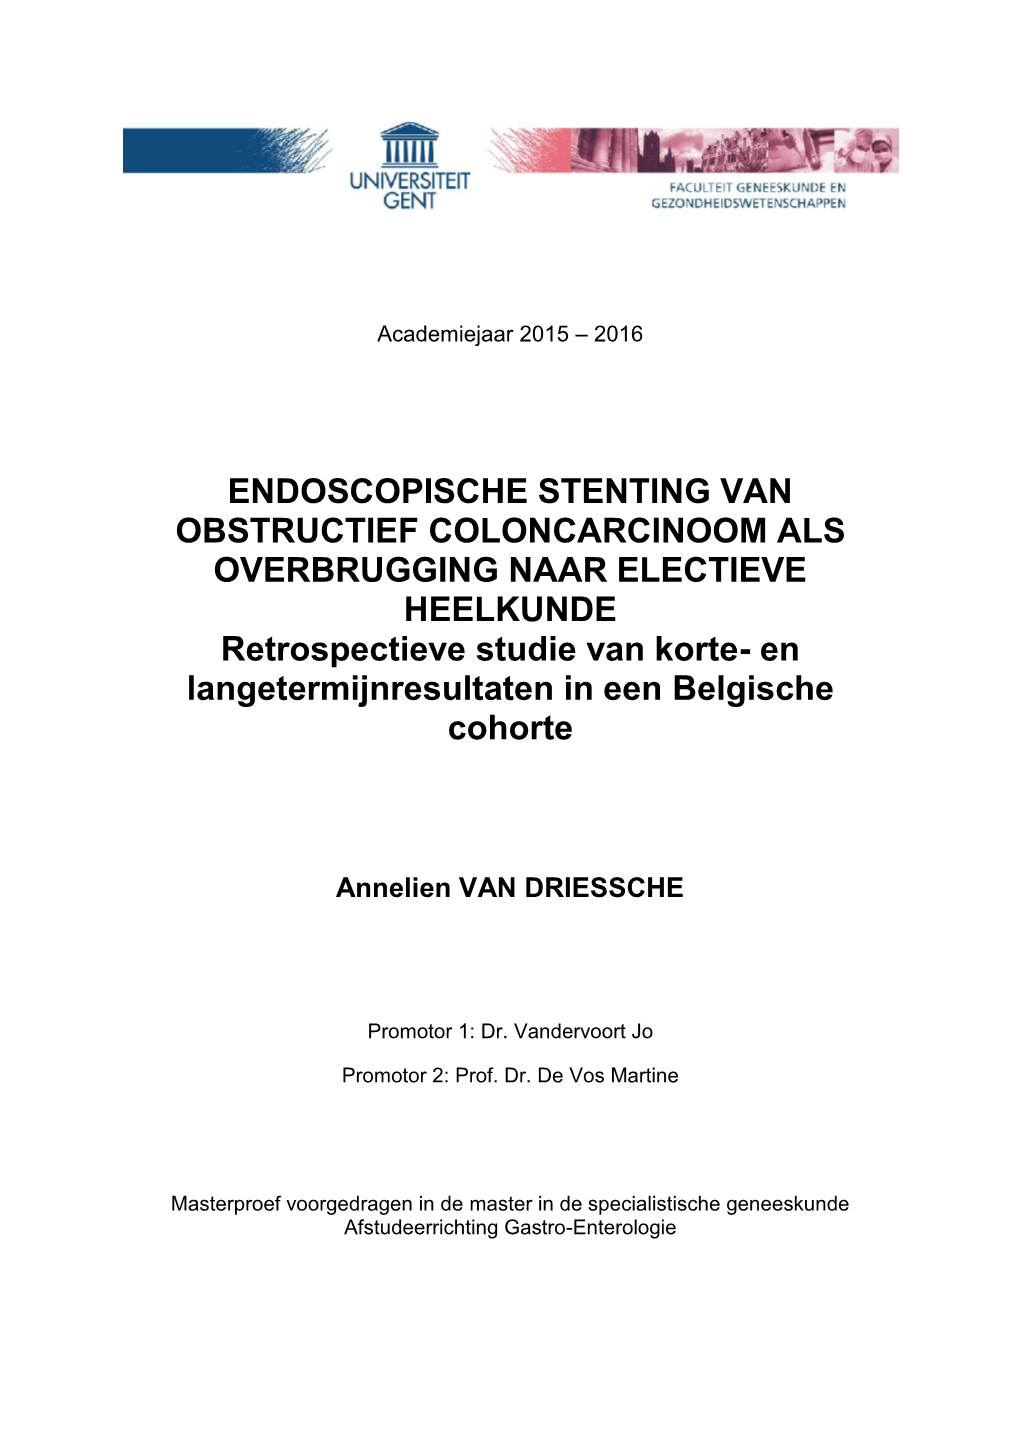 Endoscopische Stenting Van Obstructief